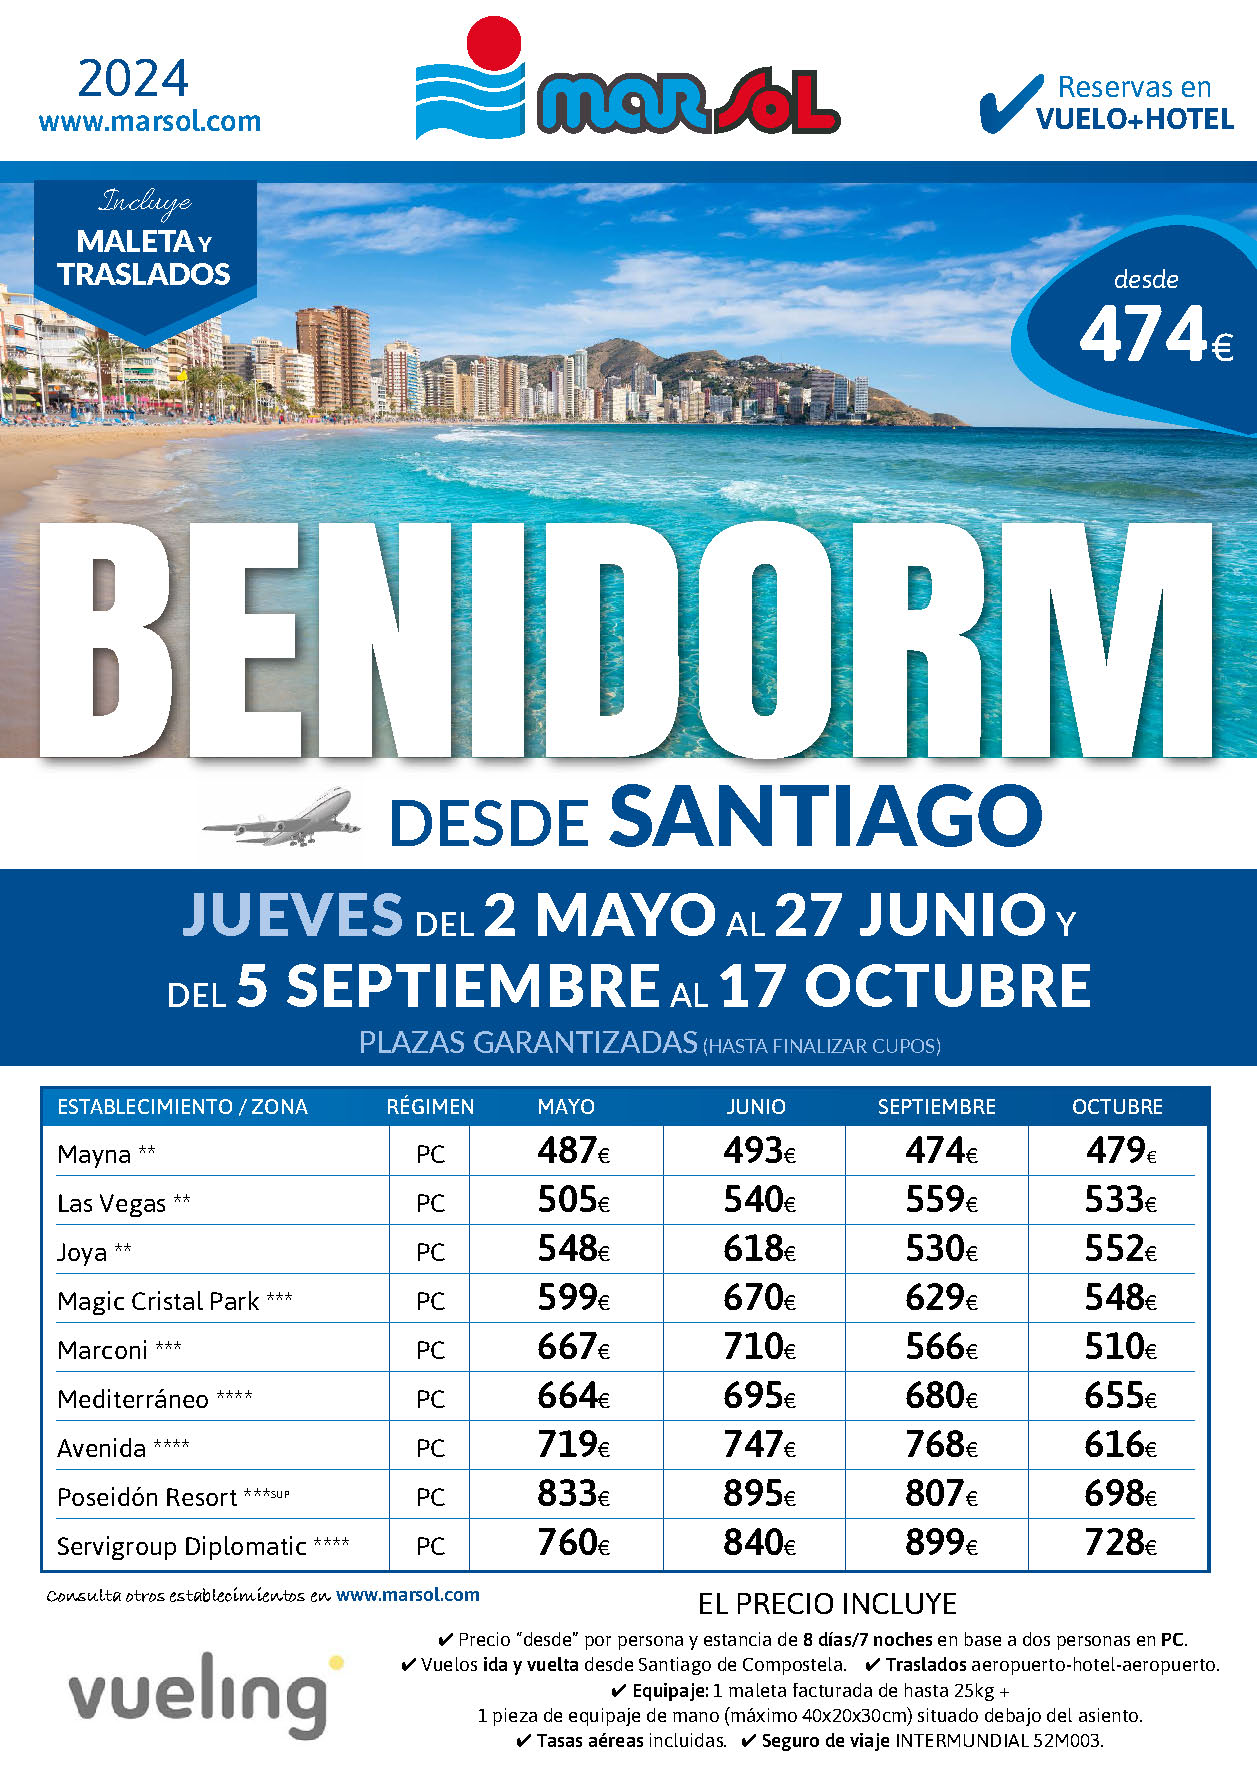 Oferta Marsol Estancia en Benidorm Vuelo Hotel PC Traslados salidas Mayo Junio Septiembre Octubre 2024 vuelo directo desde Santiago